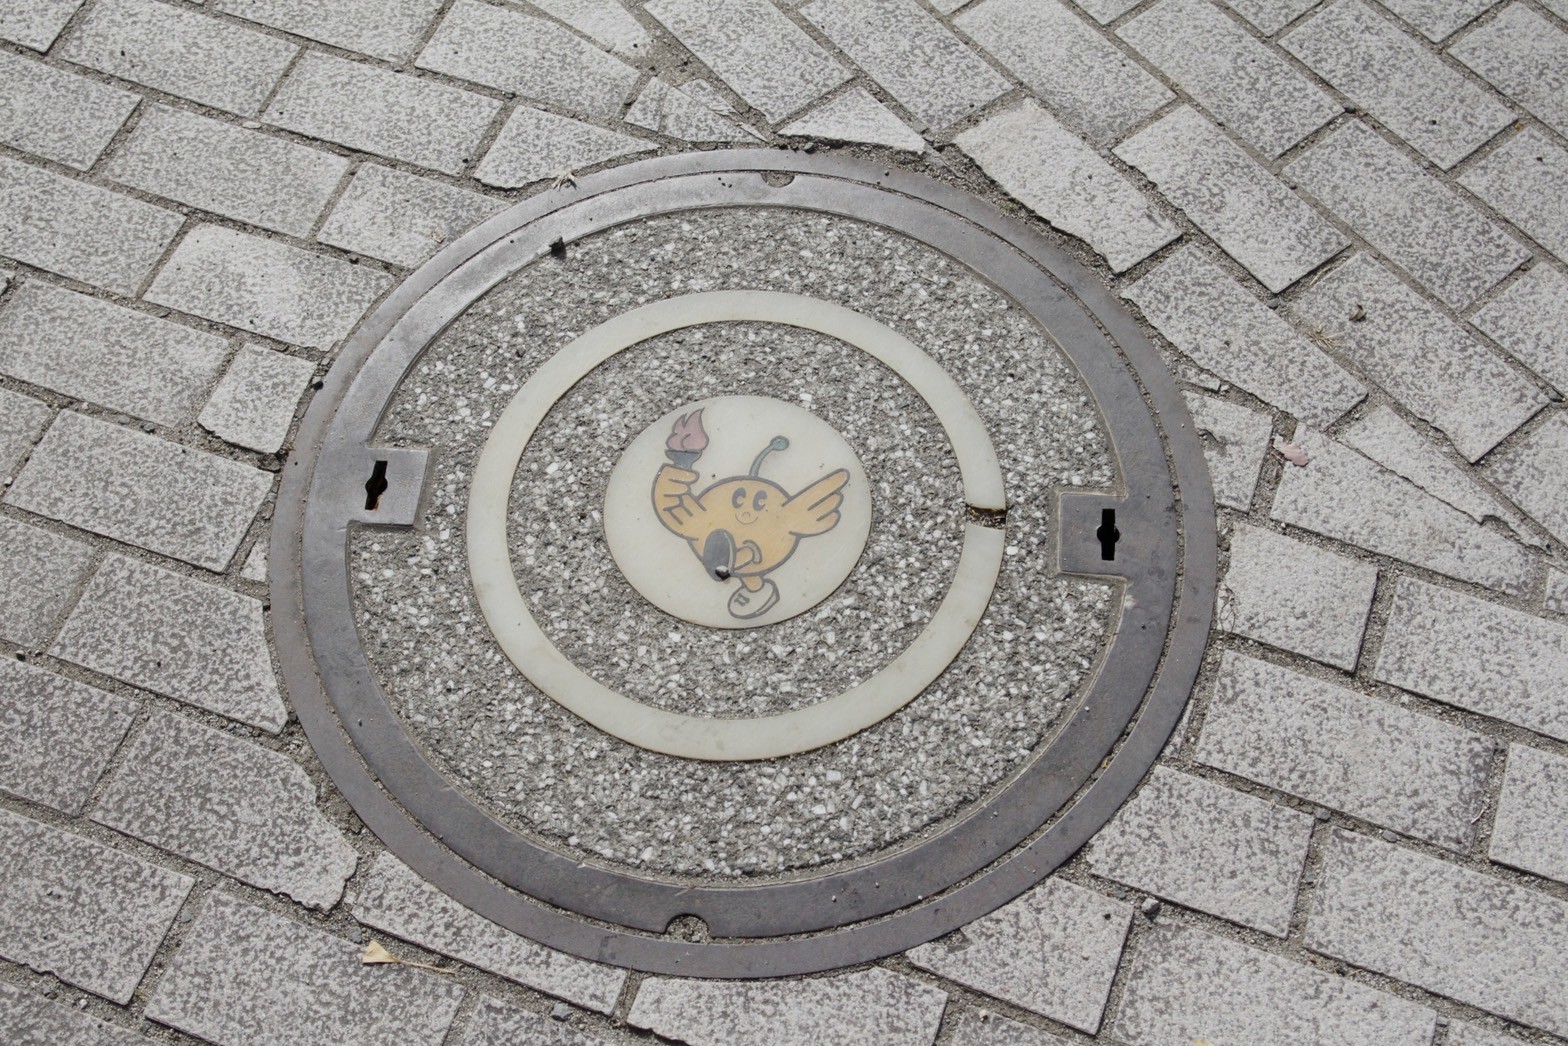 公園裡的水溝蓋上印刻著以福島縣縣鳥「黃眉黃鶲」為發想的吉祥物「奇比蛋」。